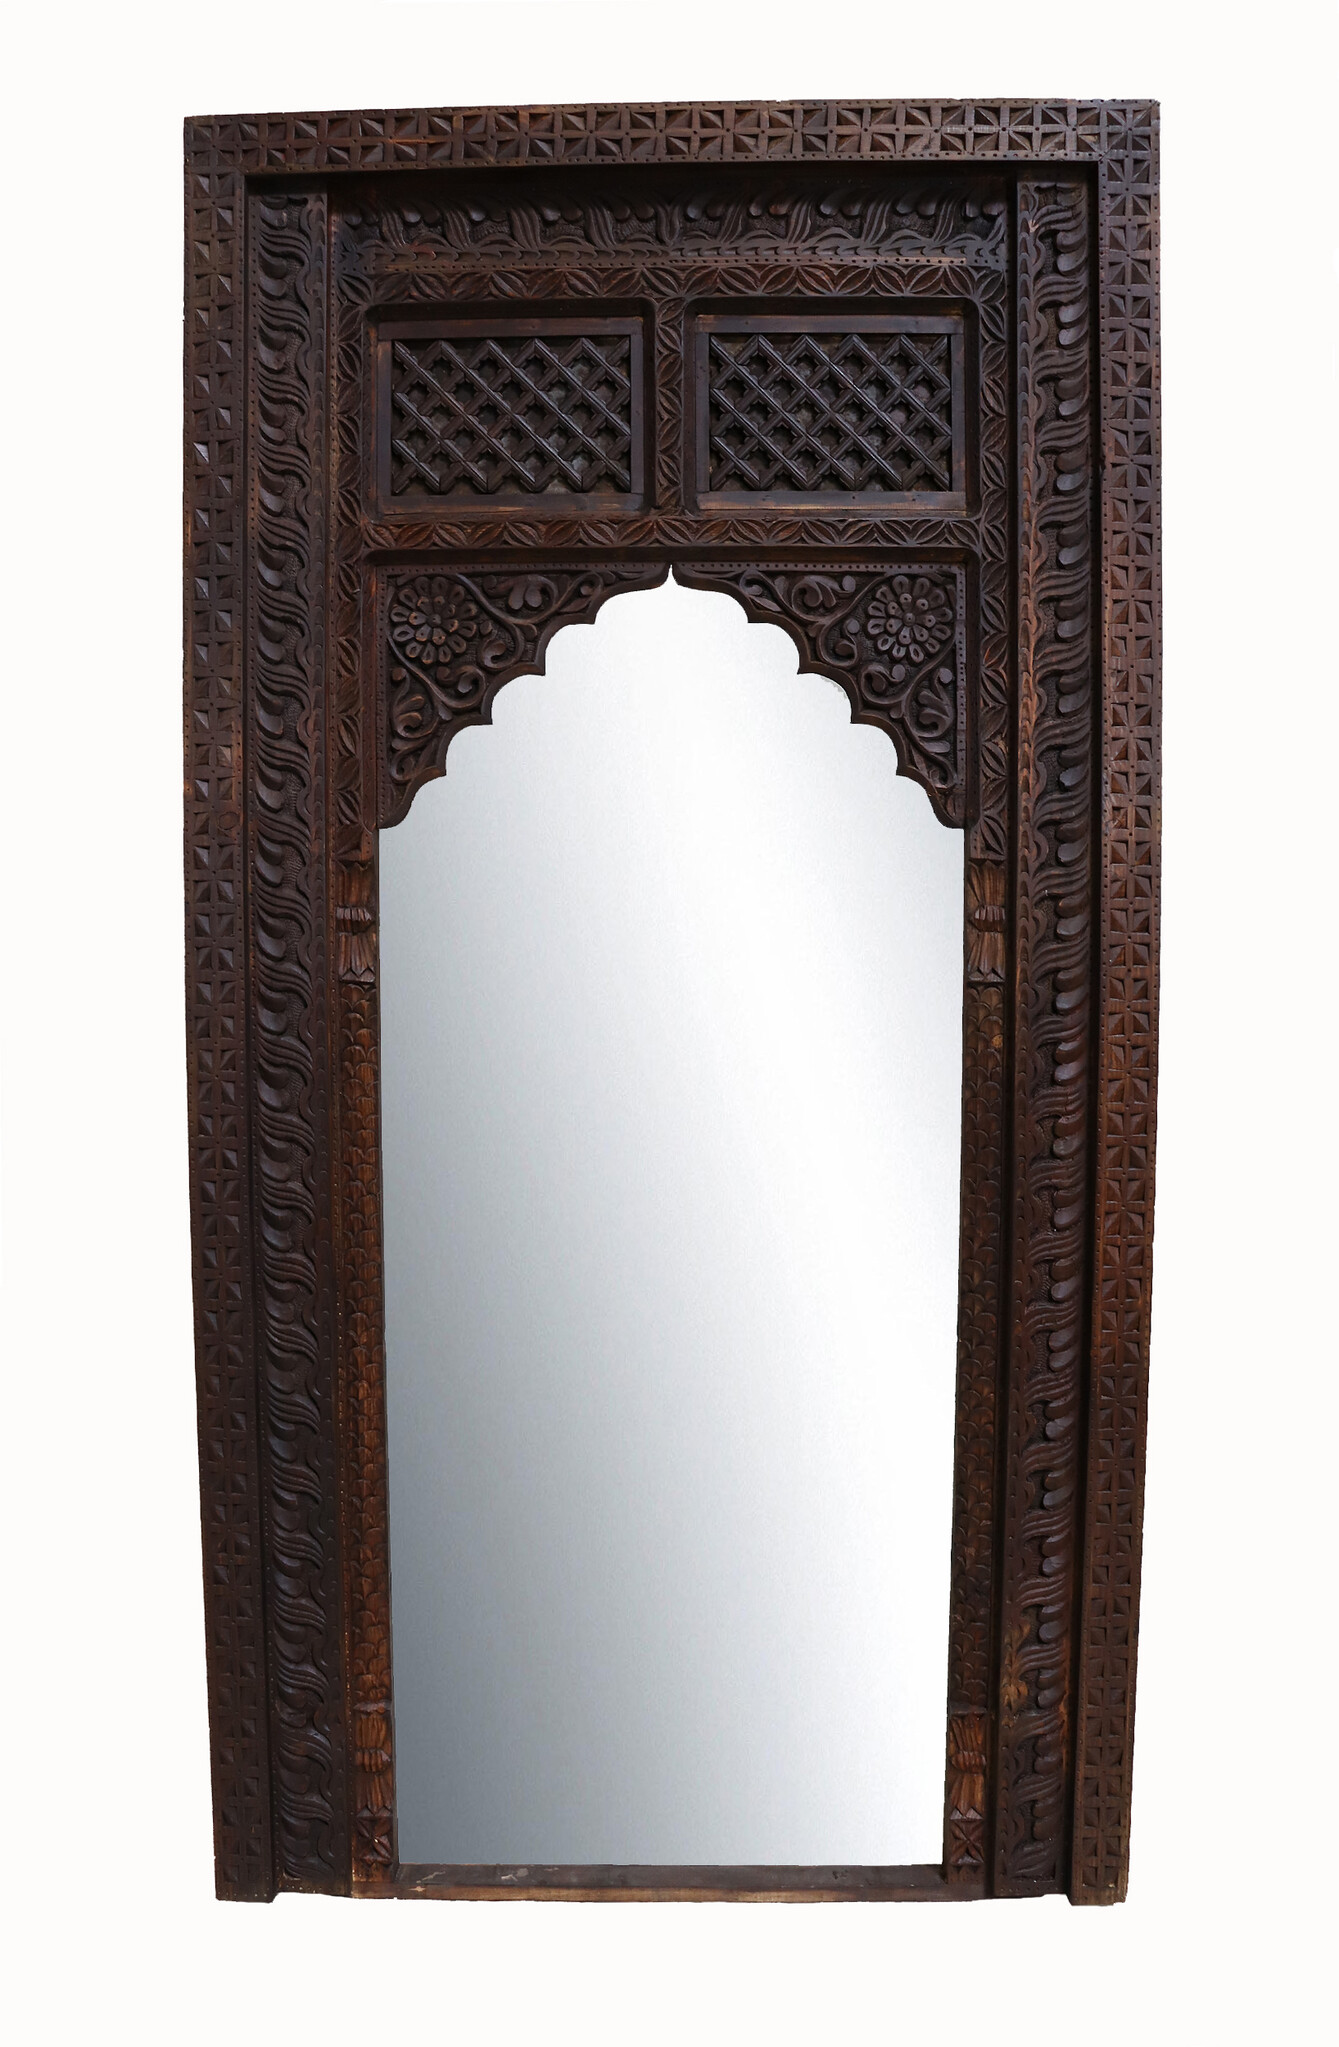 massivholz handgeschnitzte orient Afghan Fenster Holz spiegel tür Bogen Rahmen 23/F